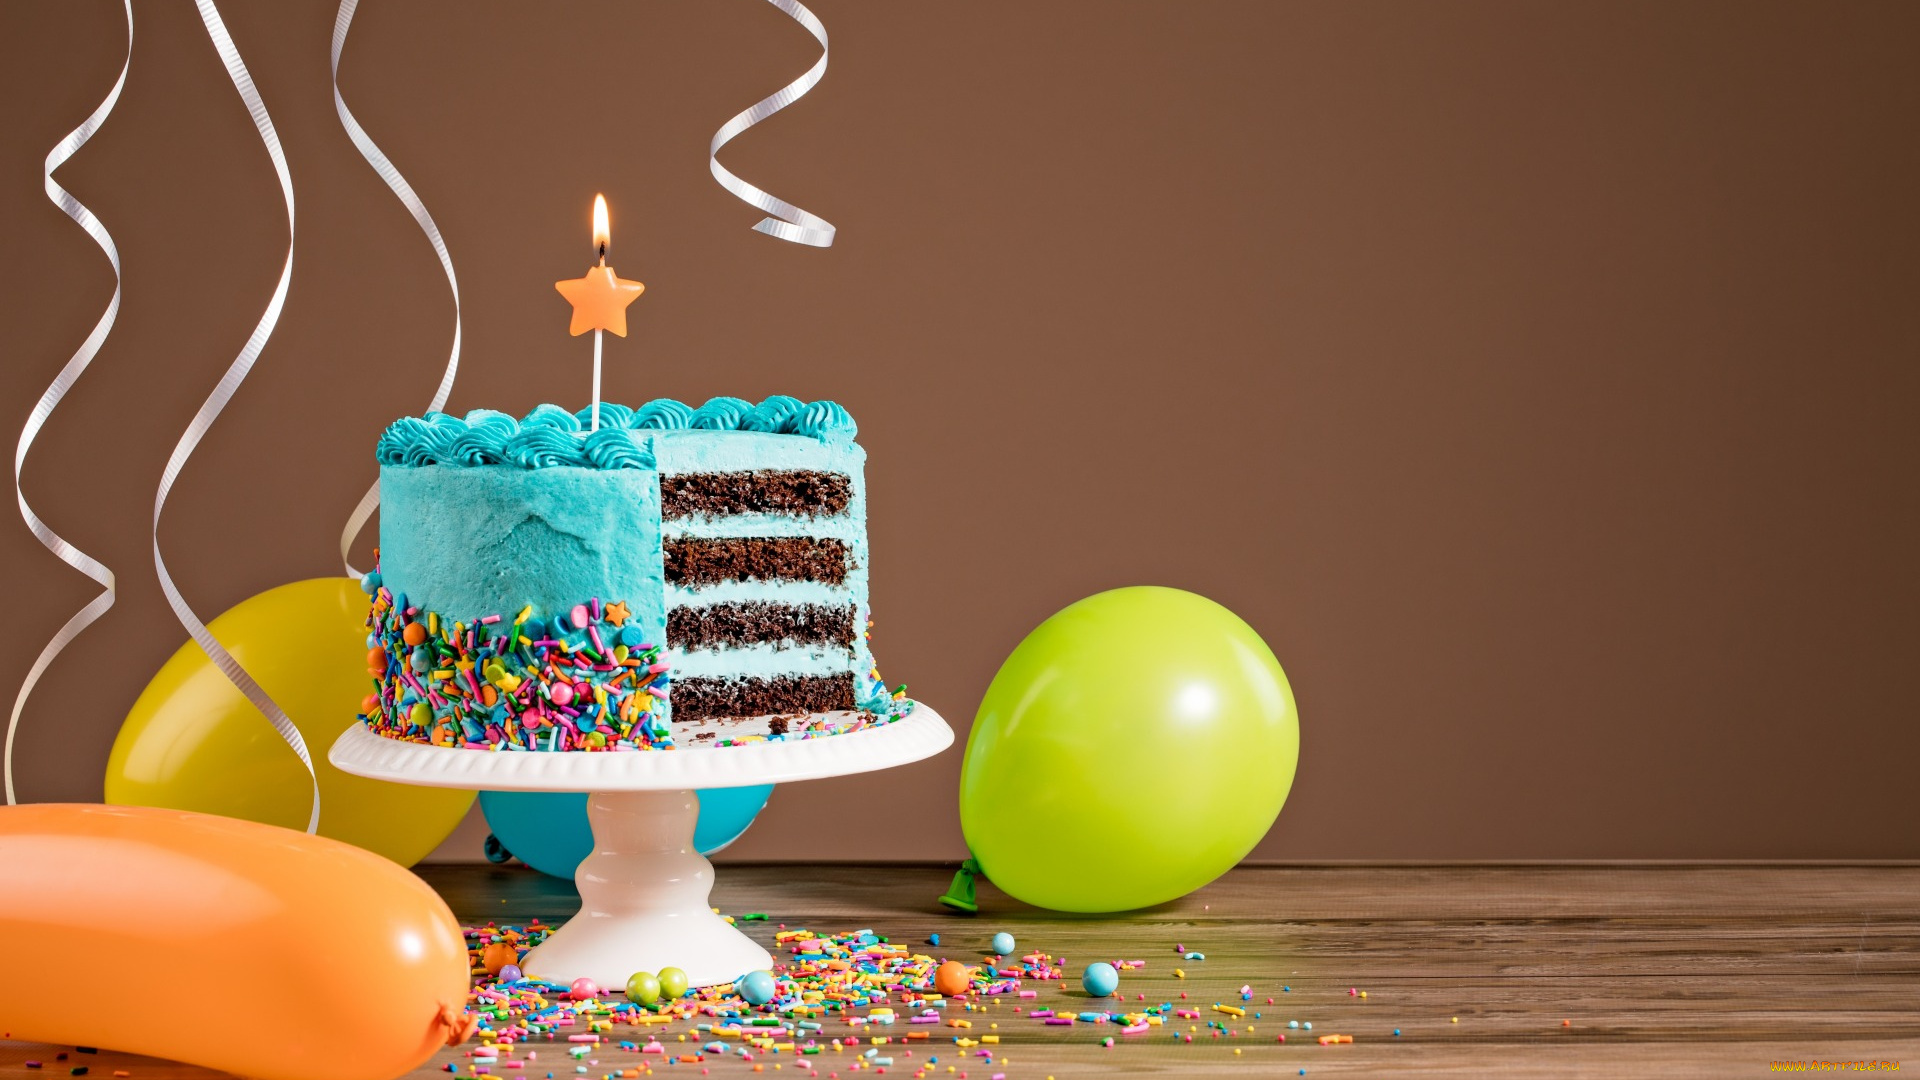 еда, торты, cake, воздушные, шары, happy, birthday, decoration, celebration, colorful, ballones, candles, день, рождения, торт